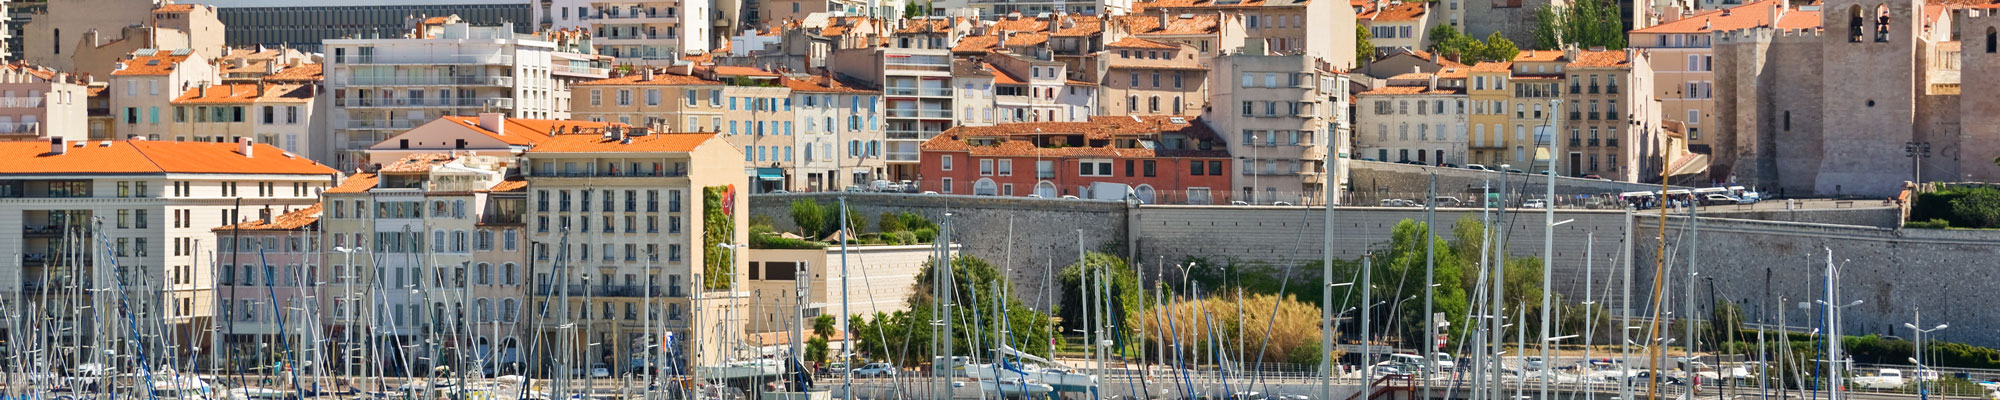 Mastère à Marseille / Bac+5 en alternance